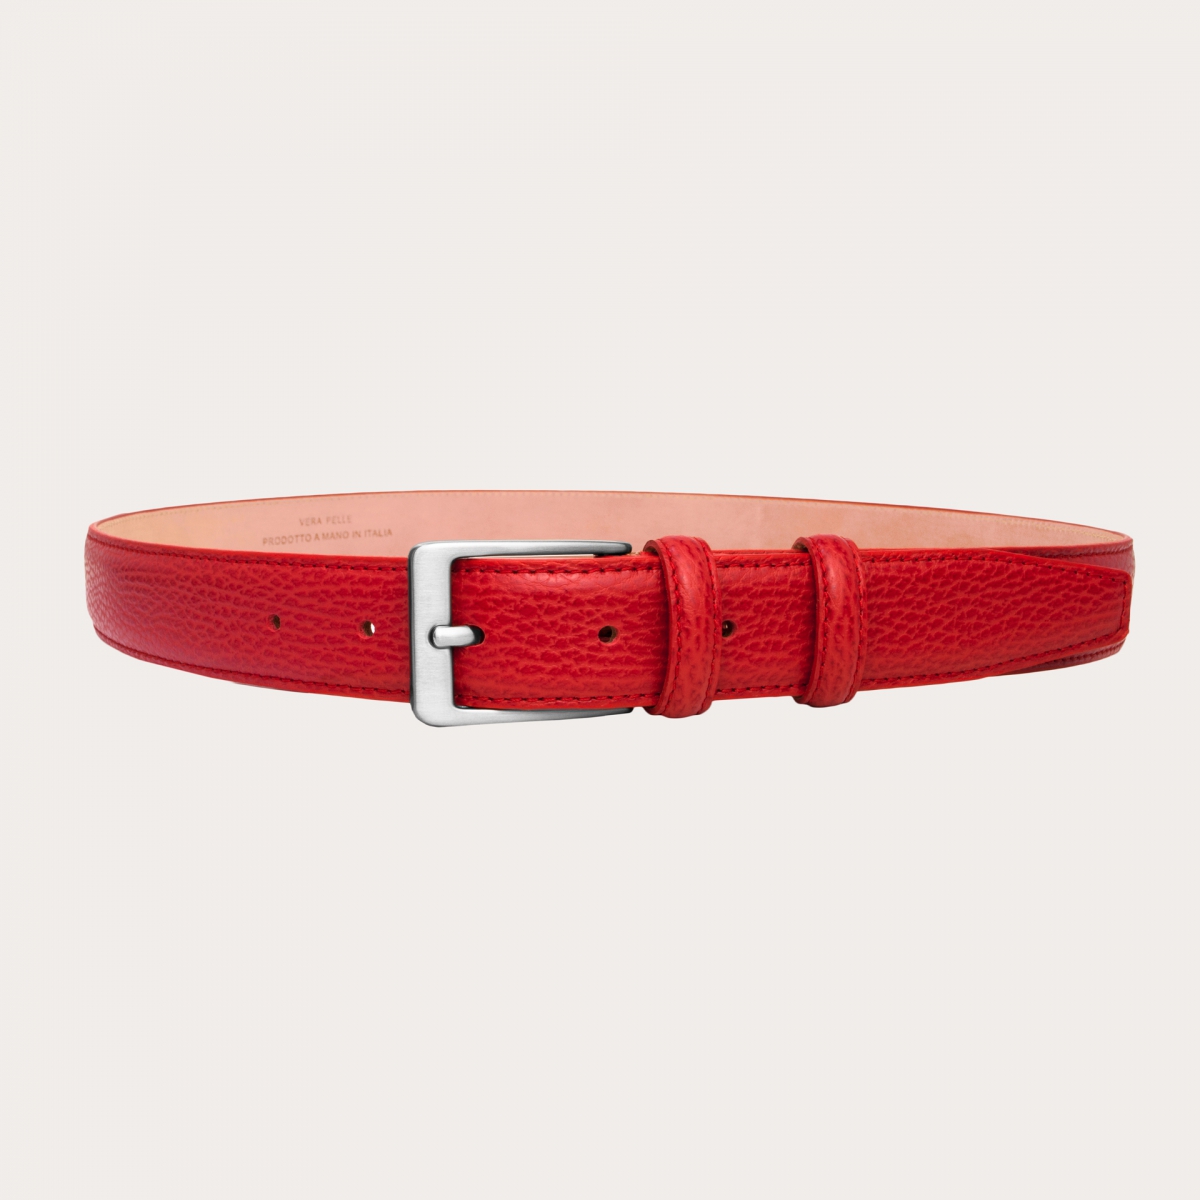 BRUCLE Cinturón rojo de piel de becerro abatanada